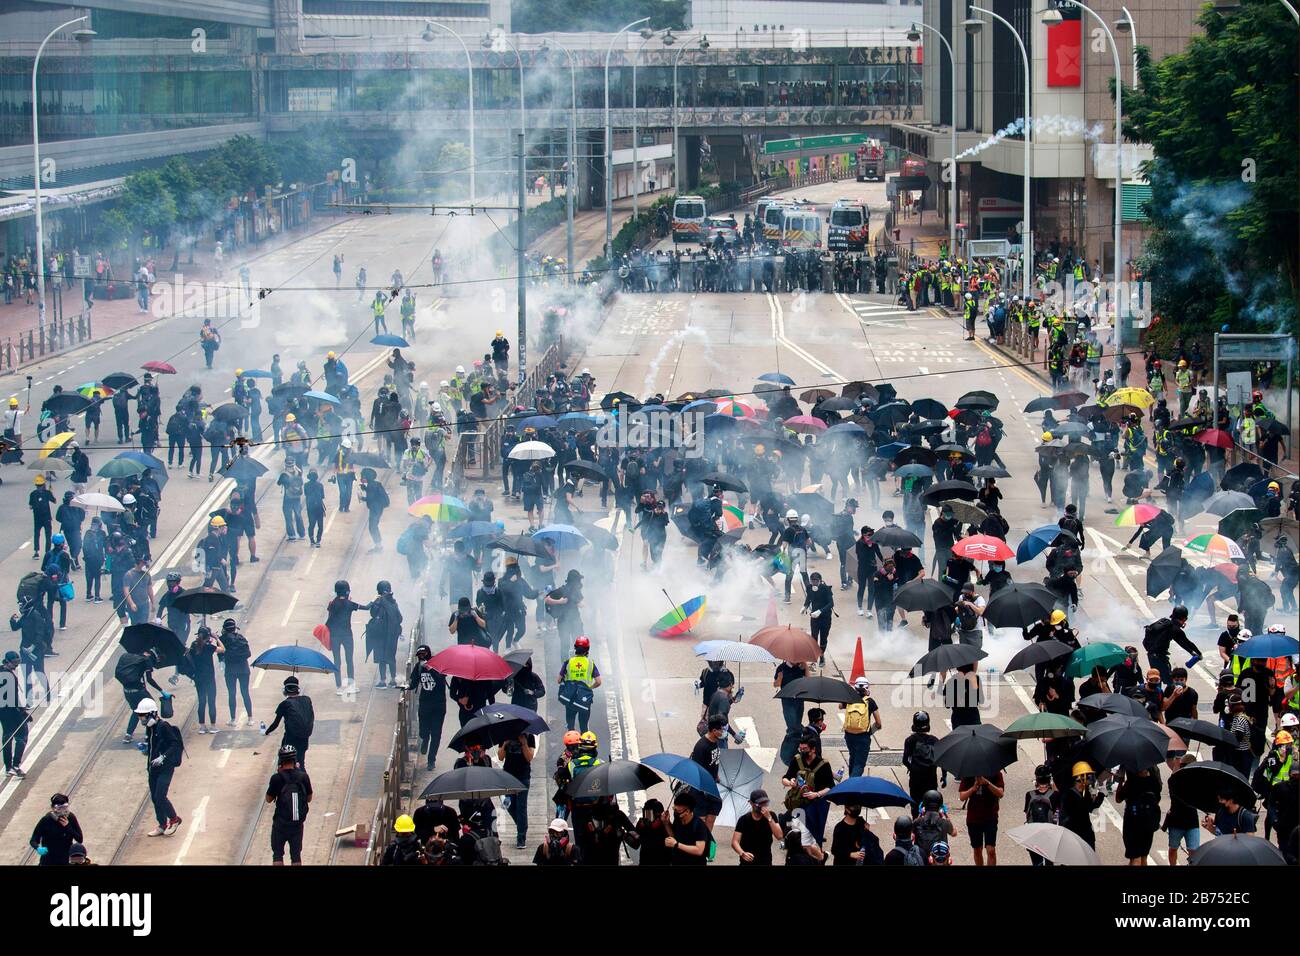 La police anti-émeute fait des tirs de gaz lacrymogène aux manifestants lors d'une marche anti-totalitaire mondiale non autorisée à Hong Kong, en Chine. Banque D'Images